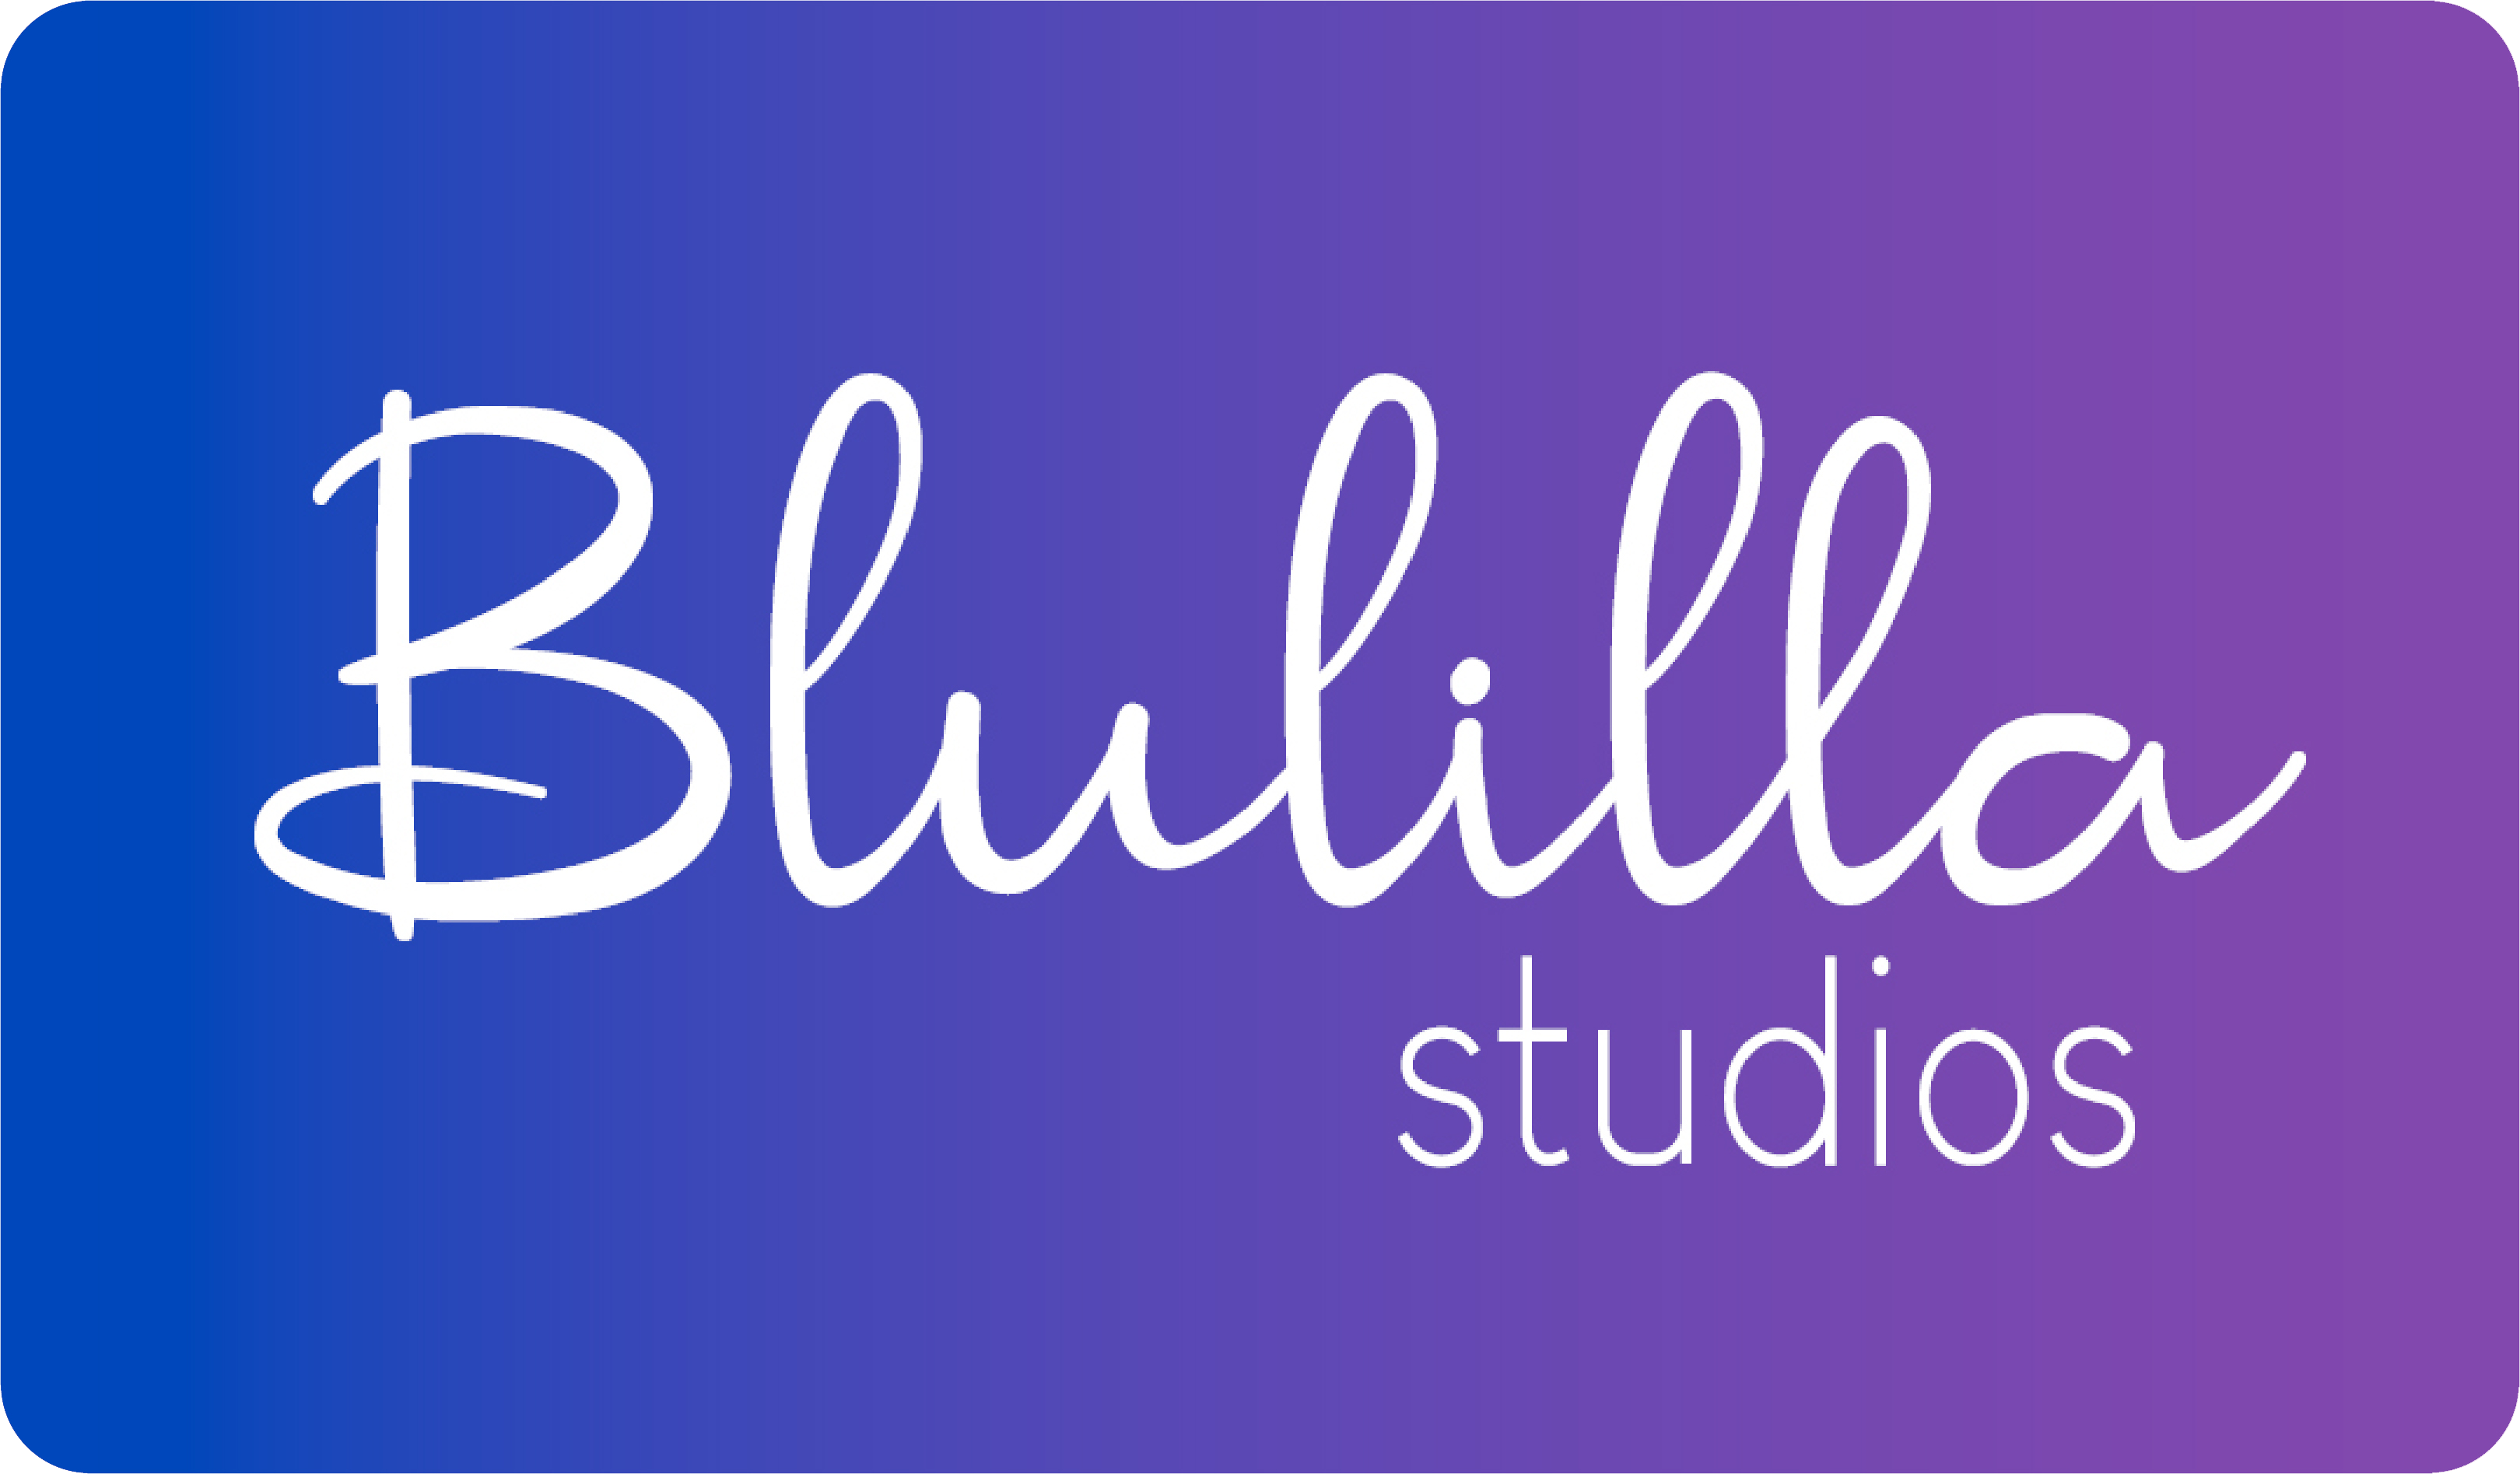 Blulilla_Studios_Logo.png